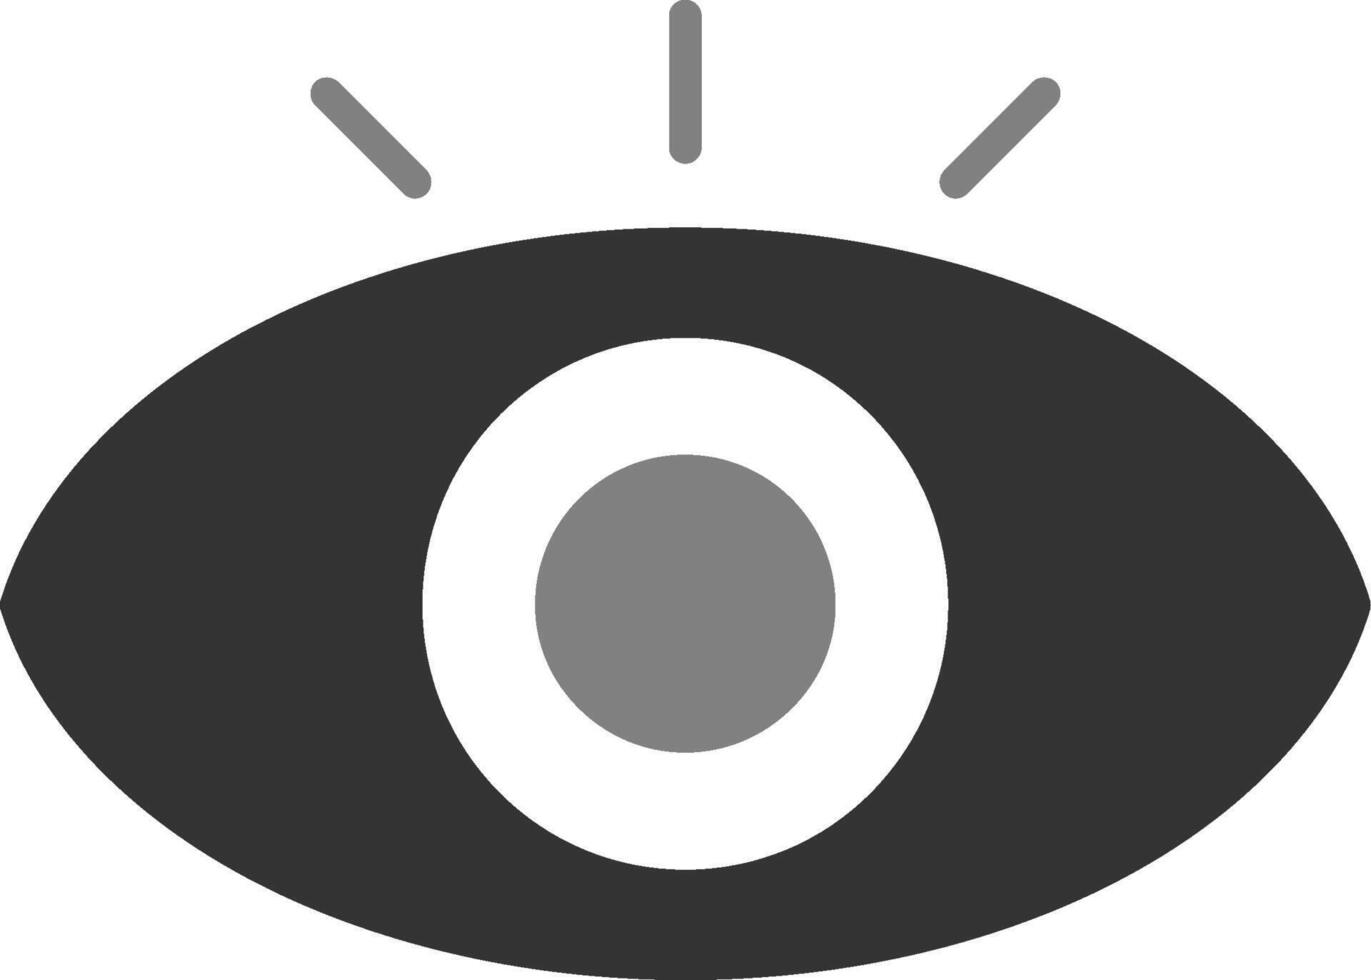 icona vettore occhio